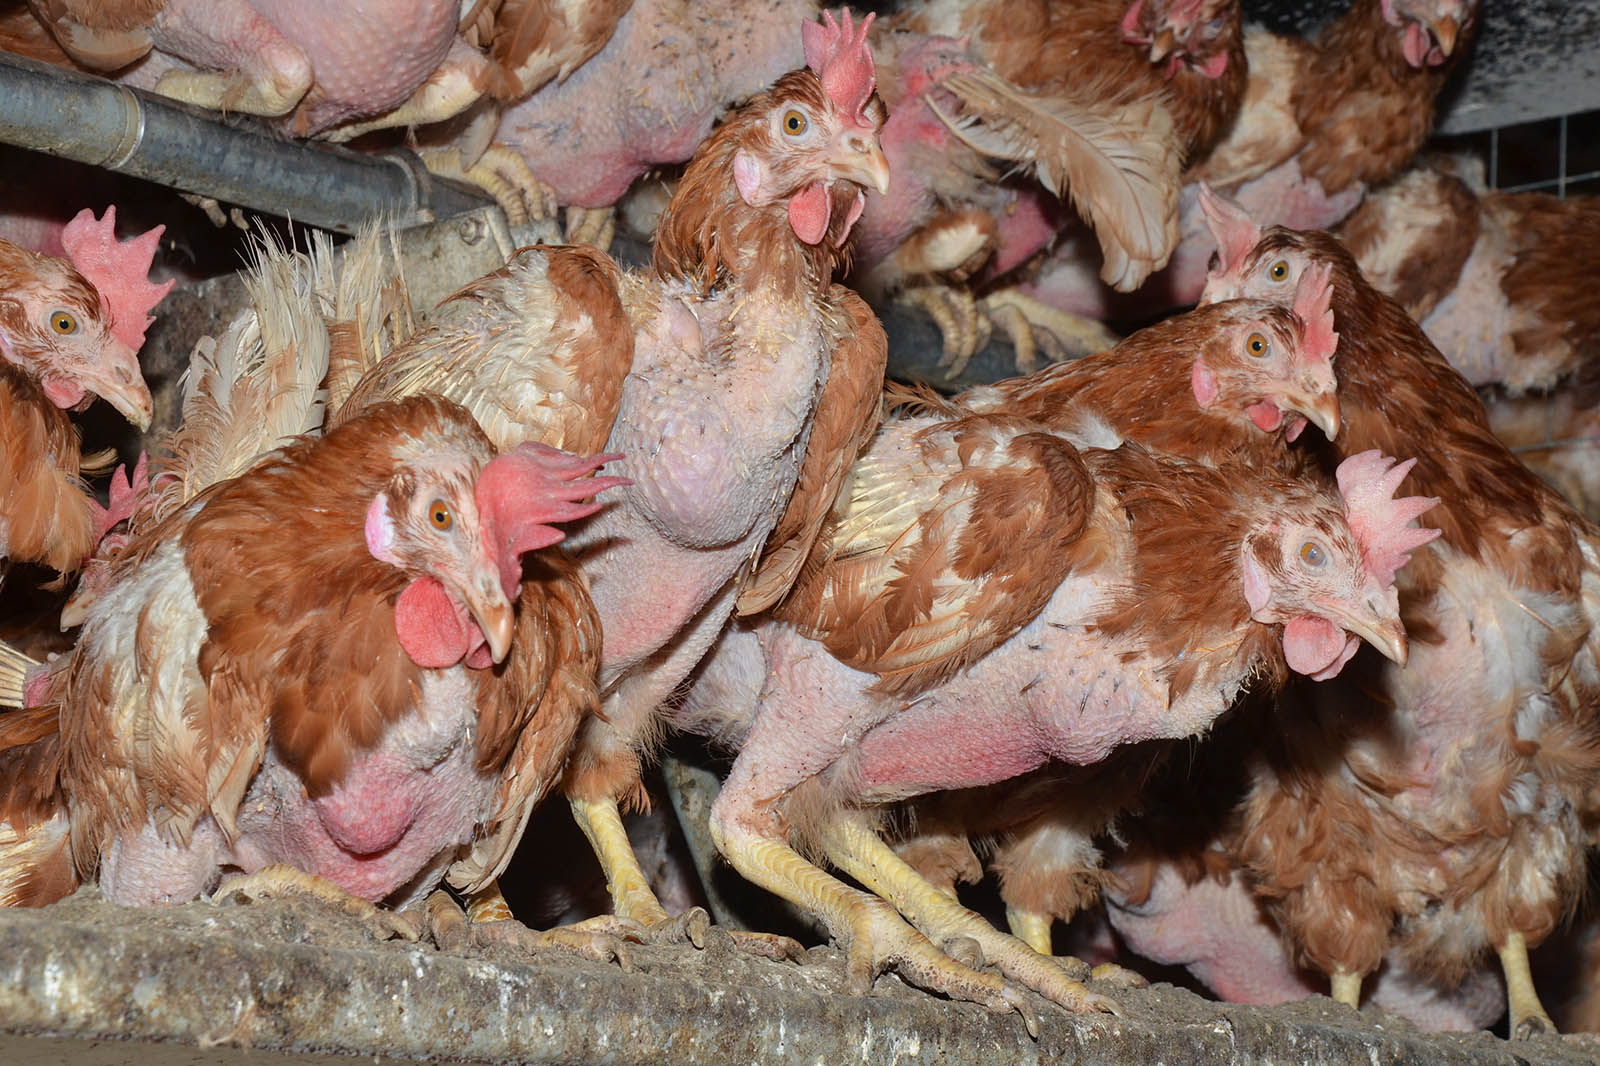 Verletzte Hühner einer Biofarm